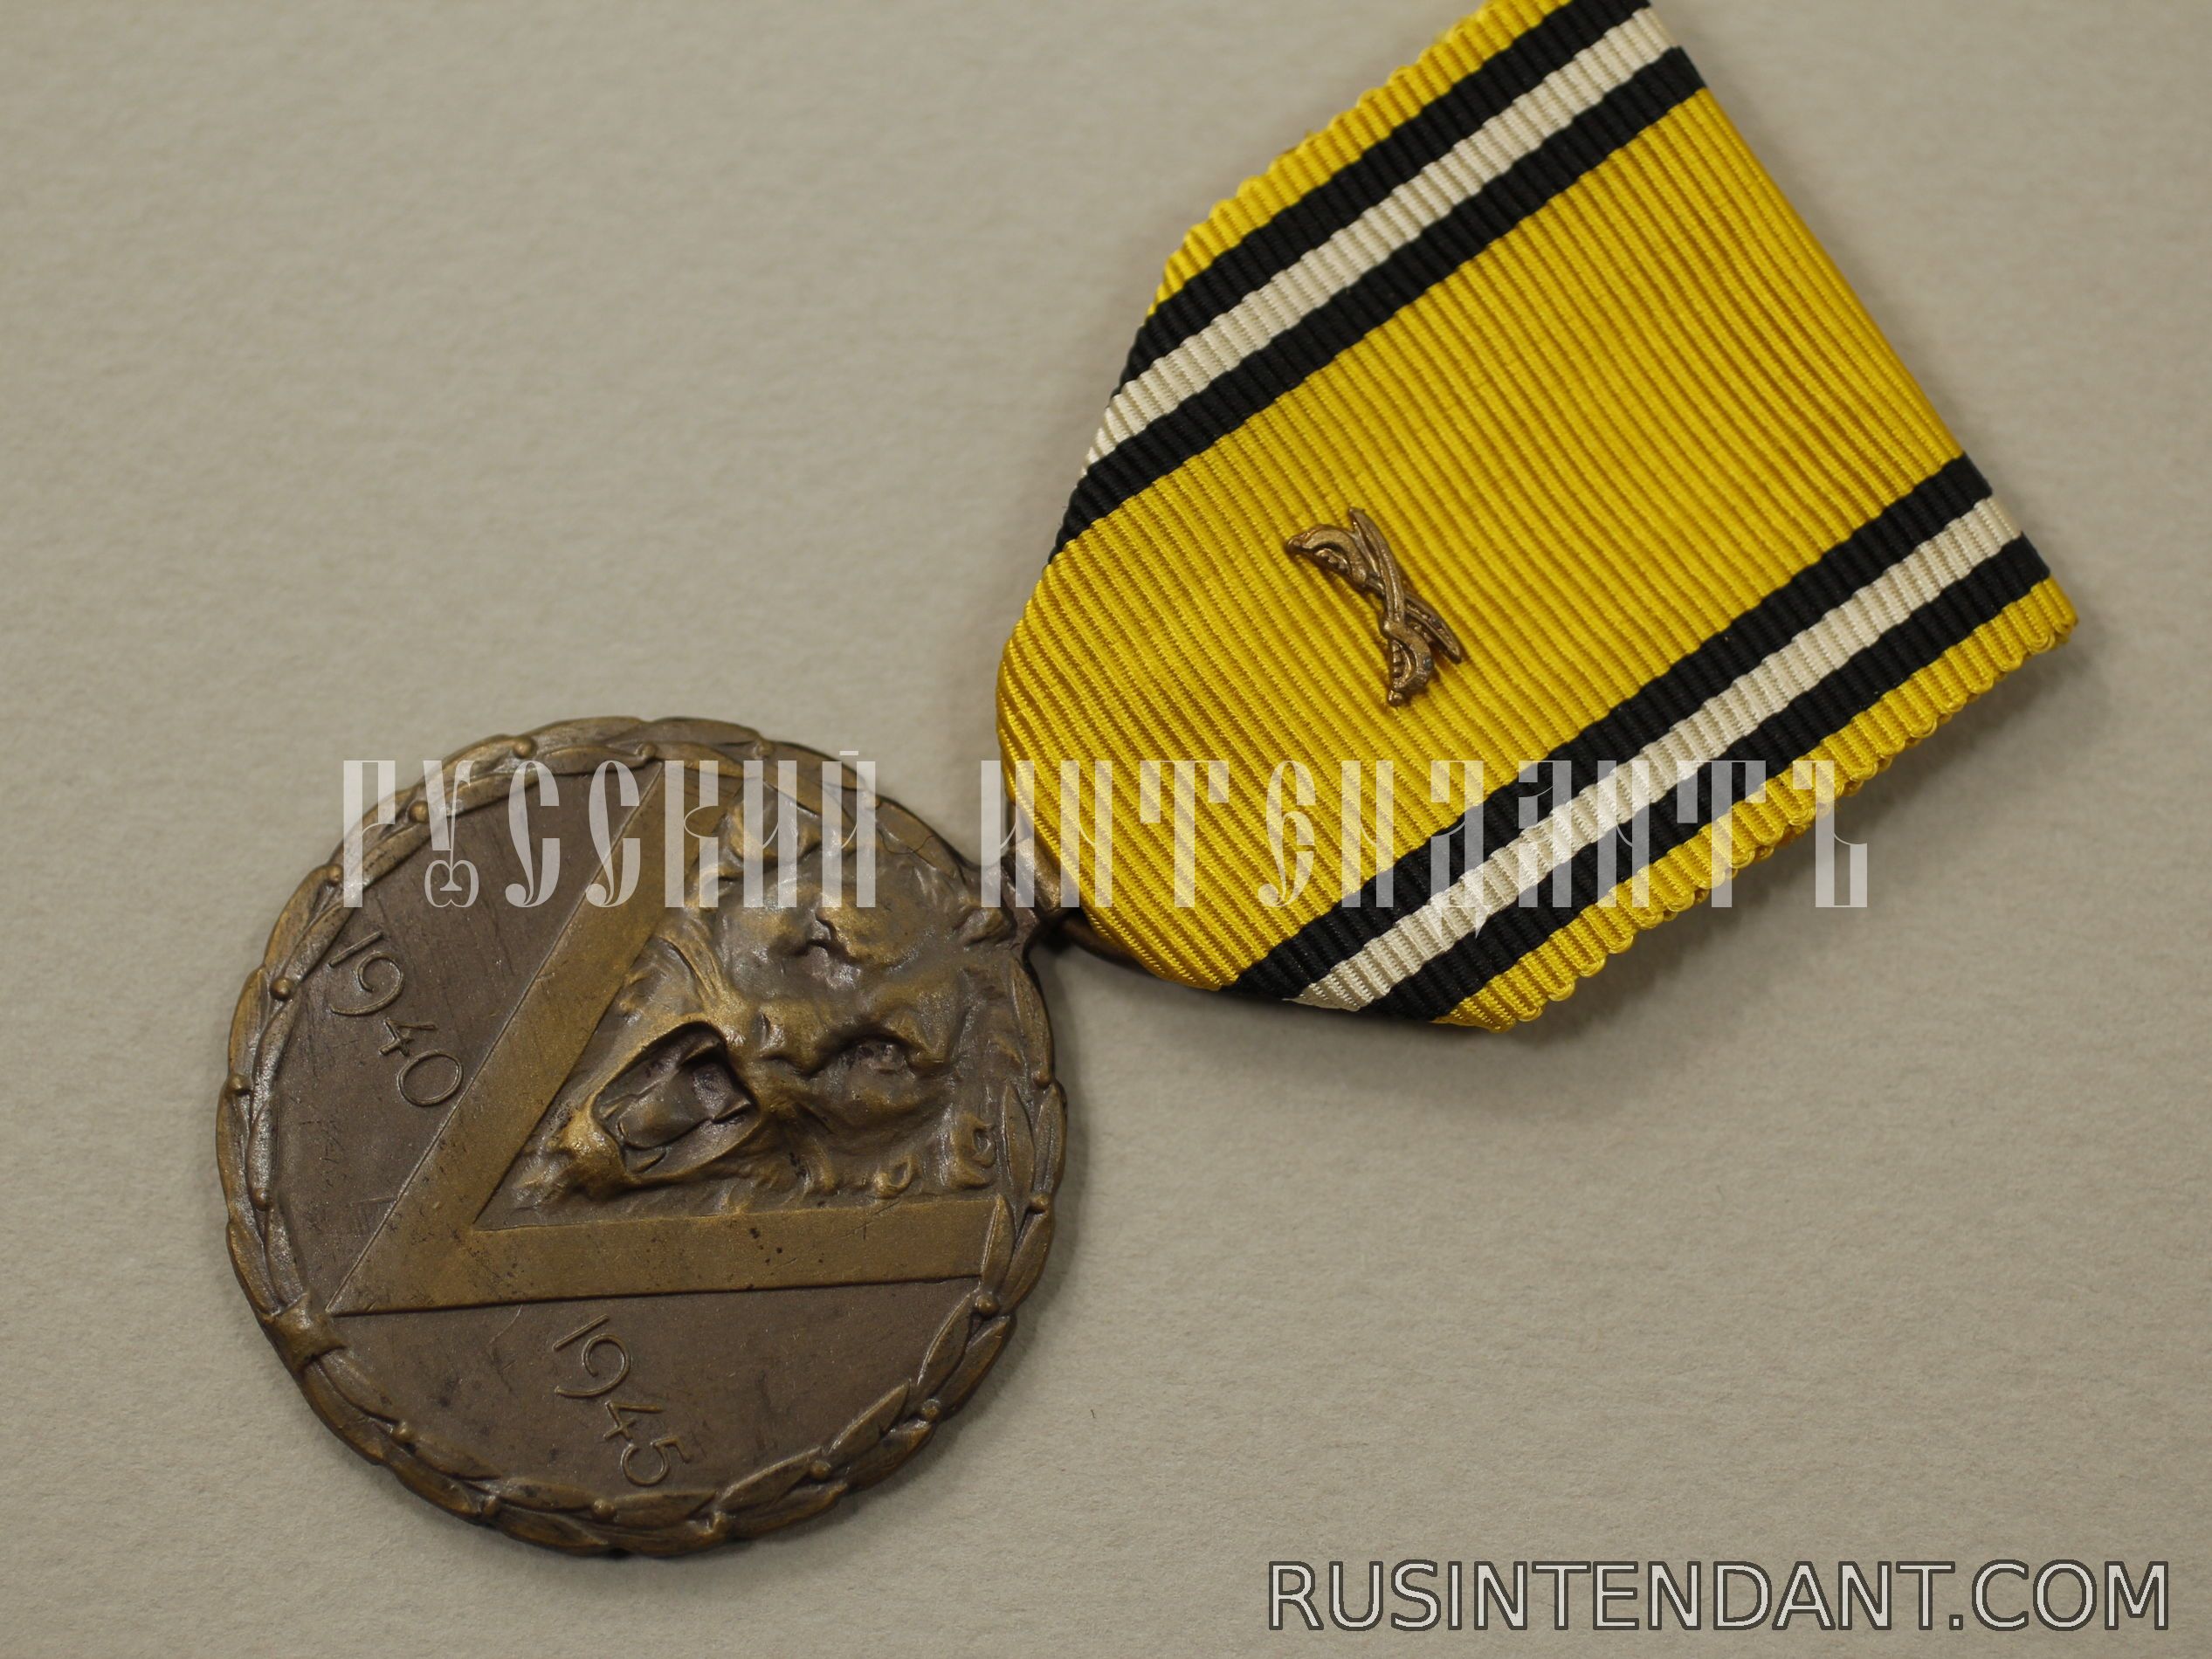 Фото 3: Бельгийская медаль "В память войны 1940-1945" 